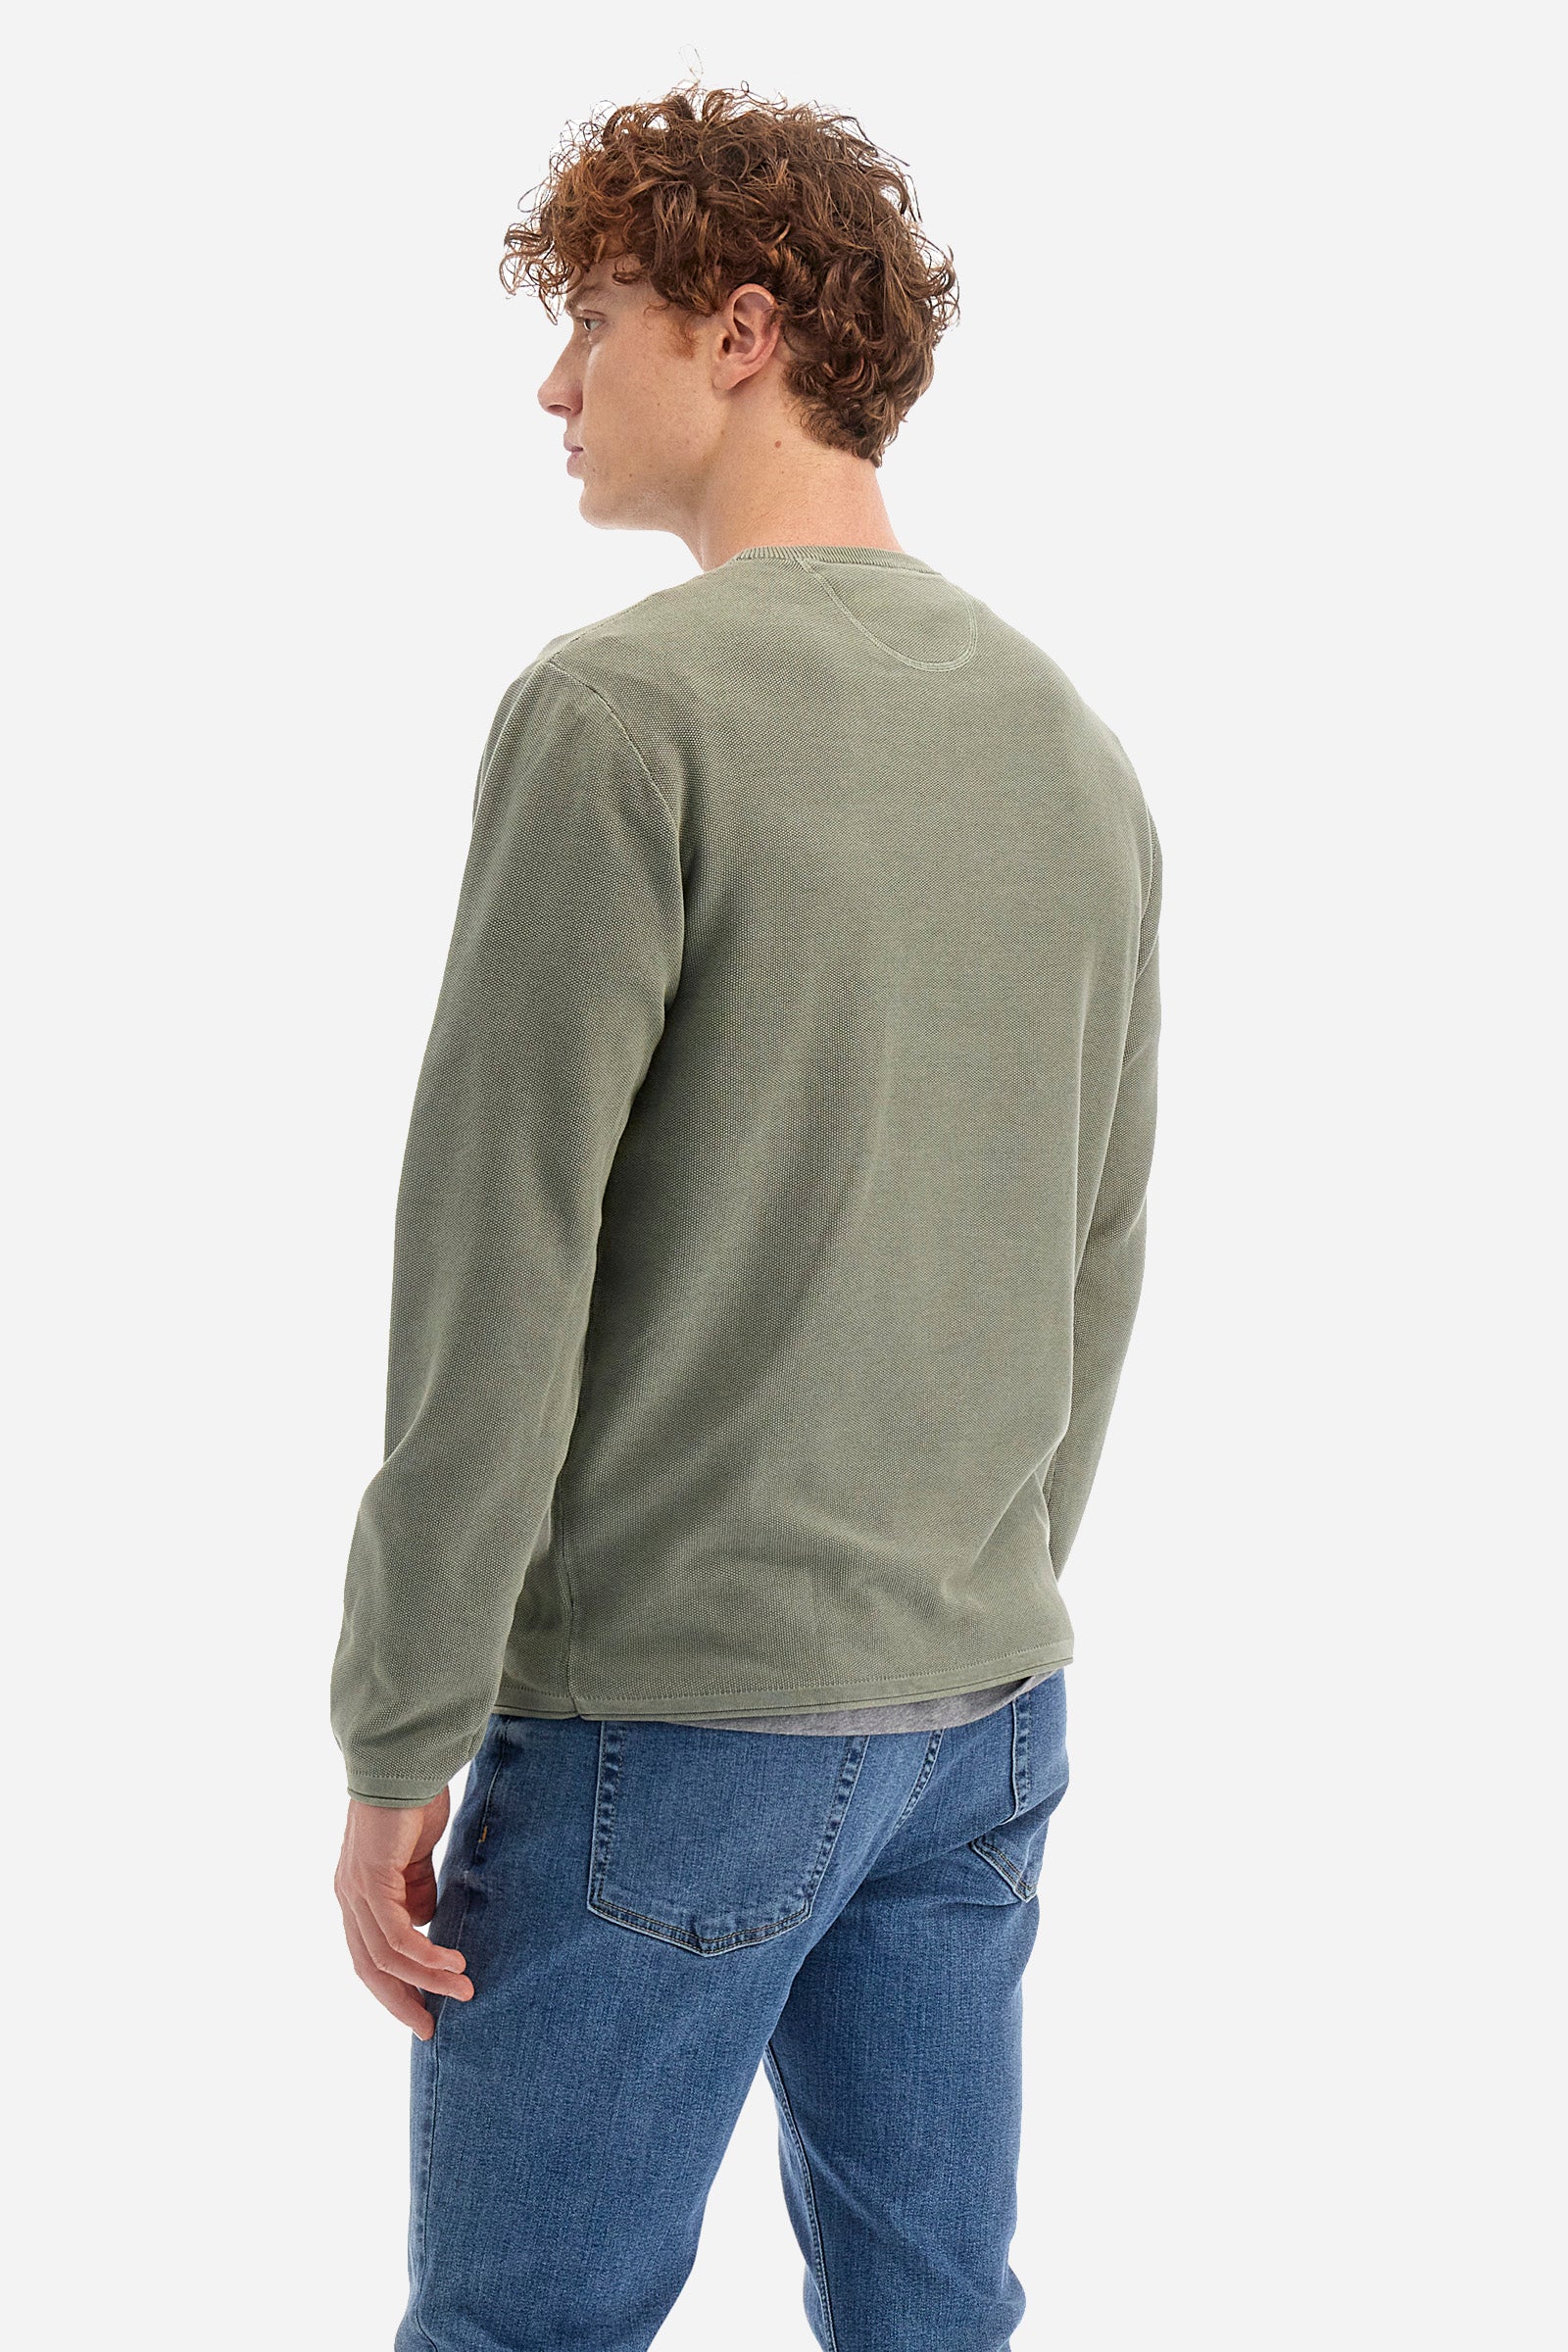 Sweater de algodón de corte recto - Ysmal